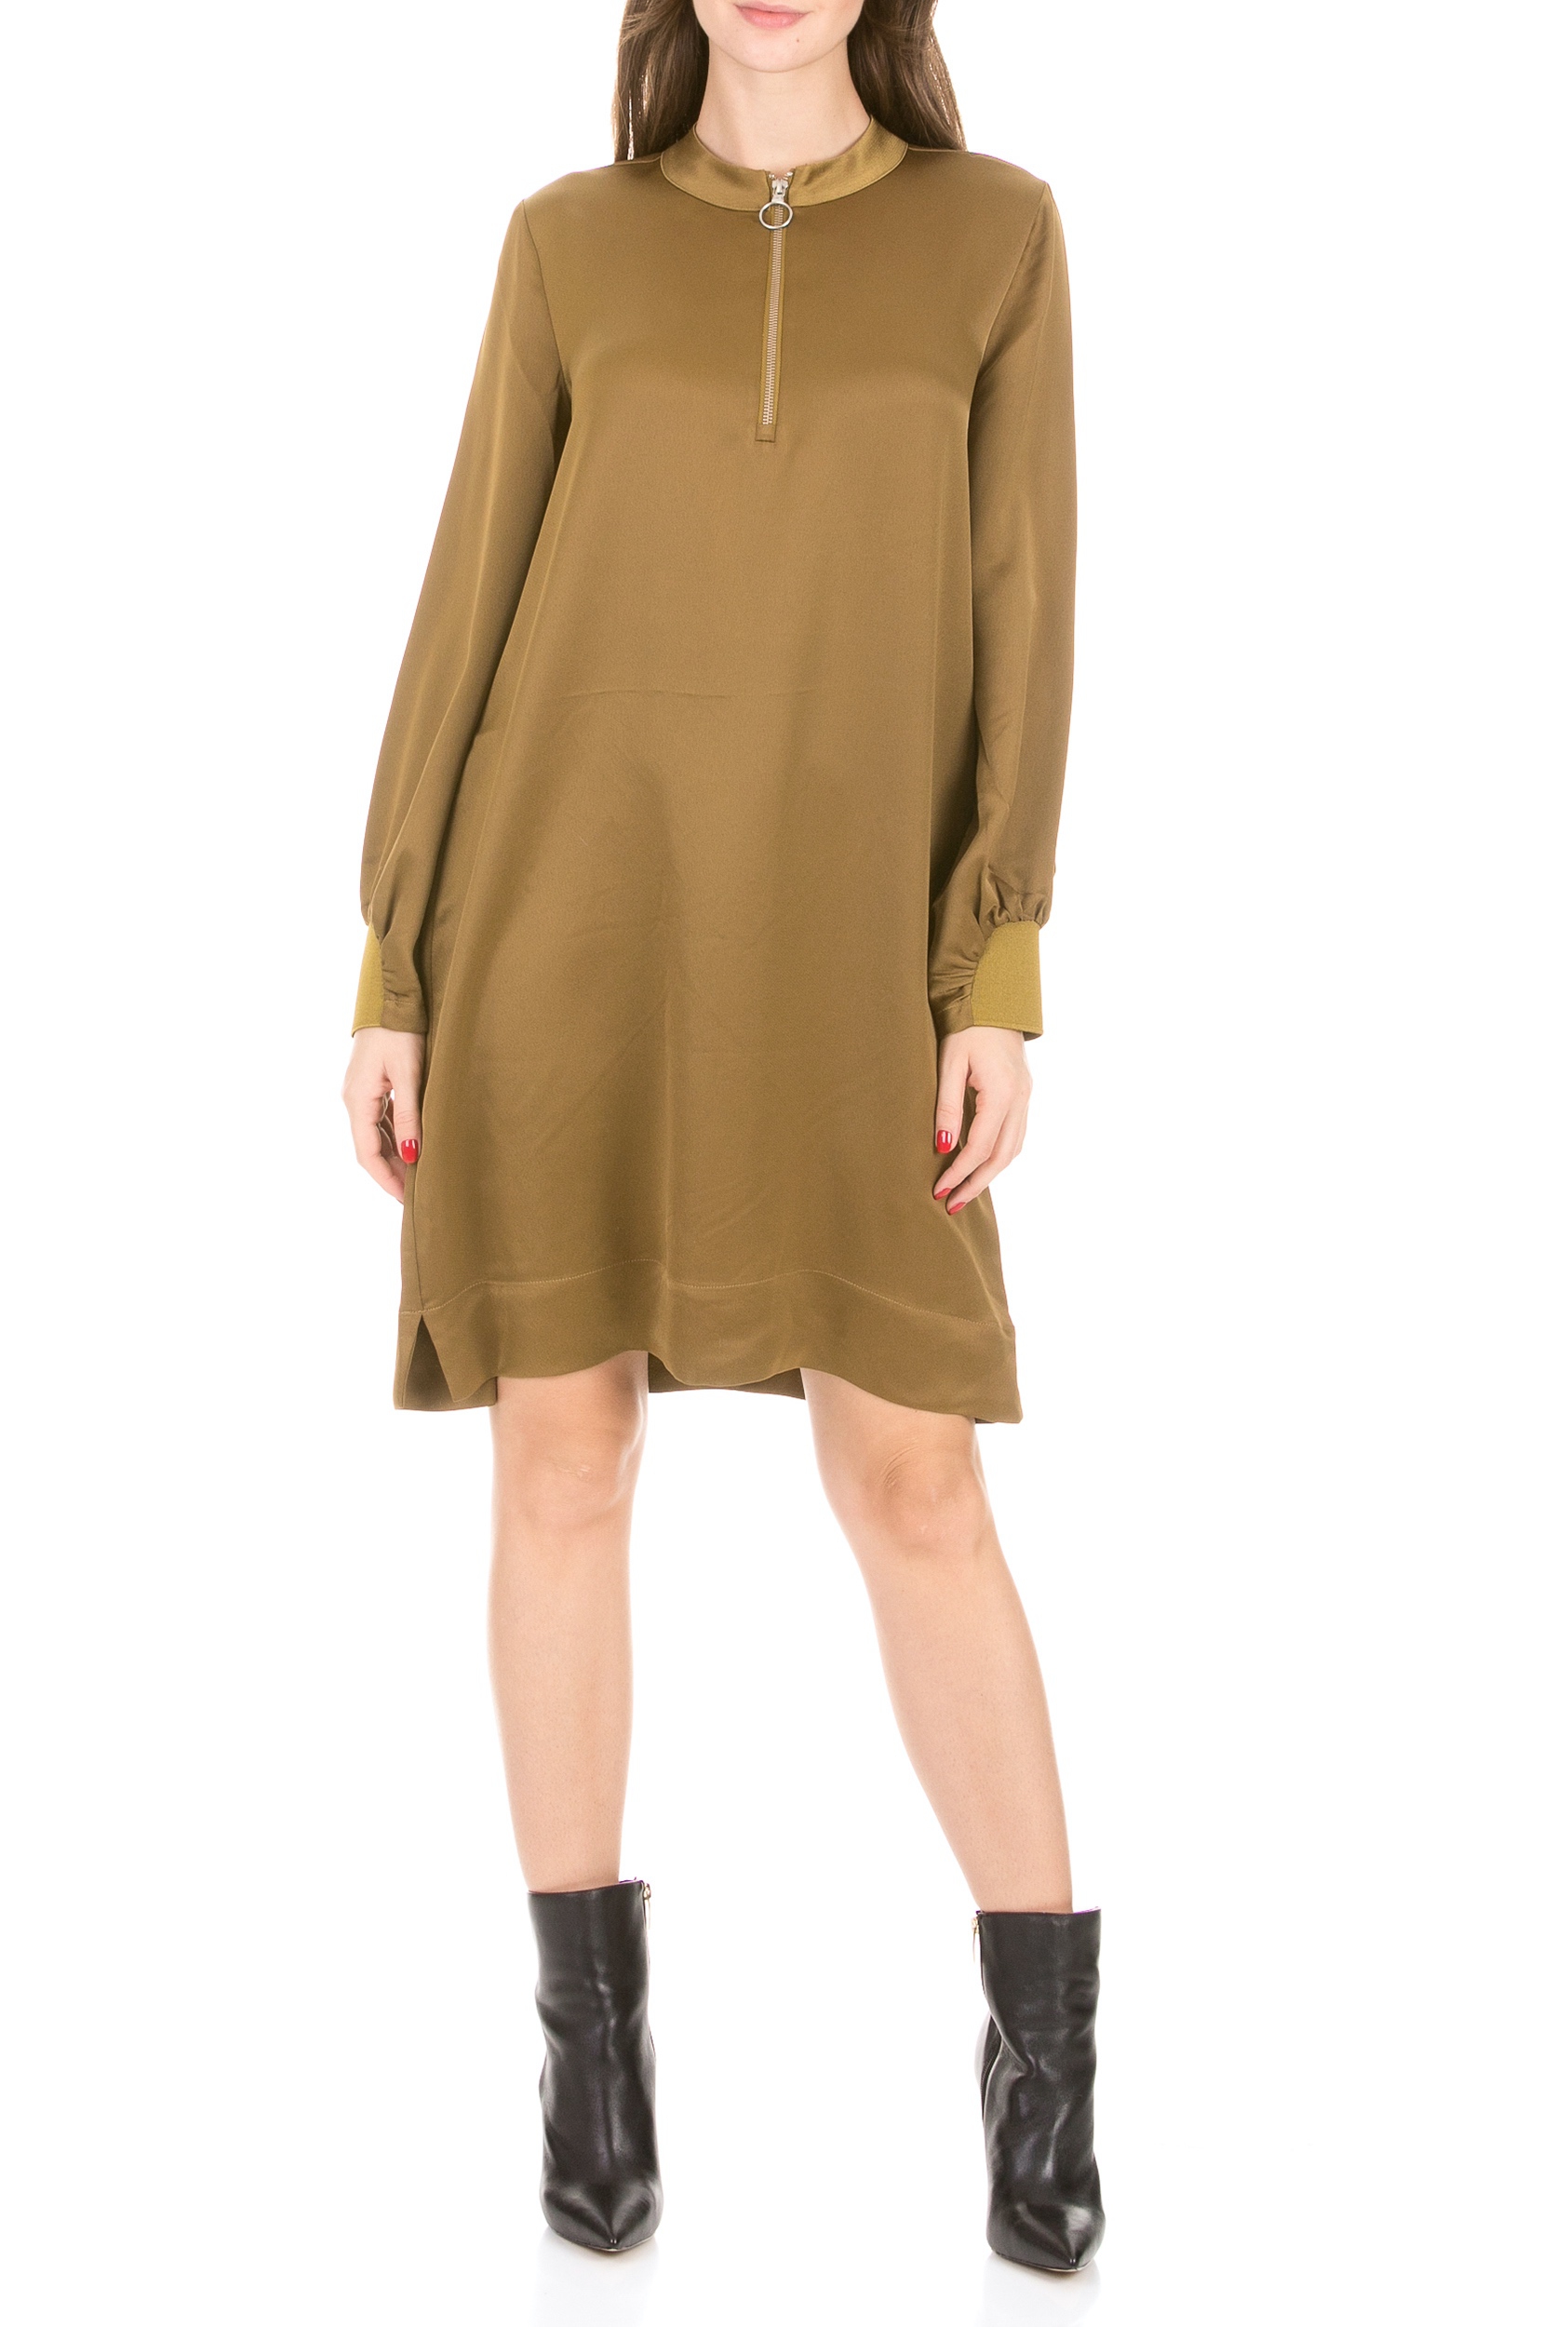 Γυναικεία/Ρούχα/Φορέματα/Μίνι SCOTCH & SODA - Γυναικείο mini φόρεμα SCOTCH & SODA χρυσό πράσινο